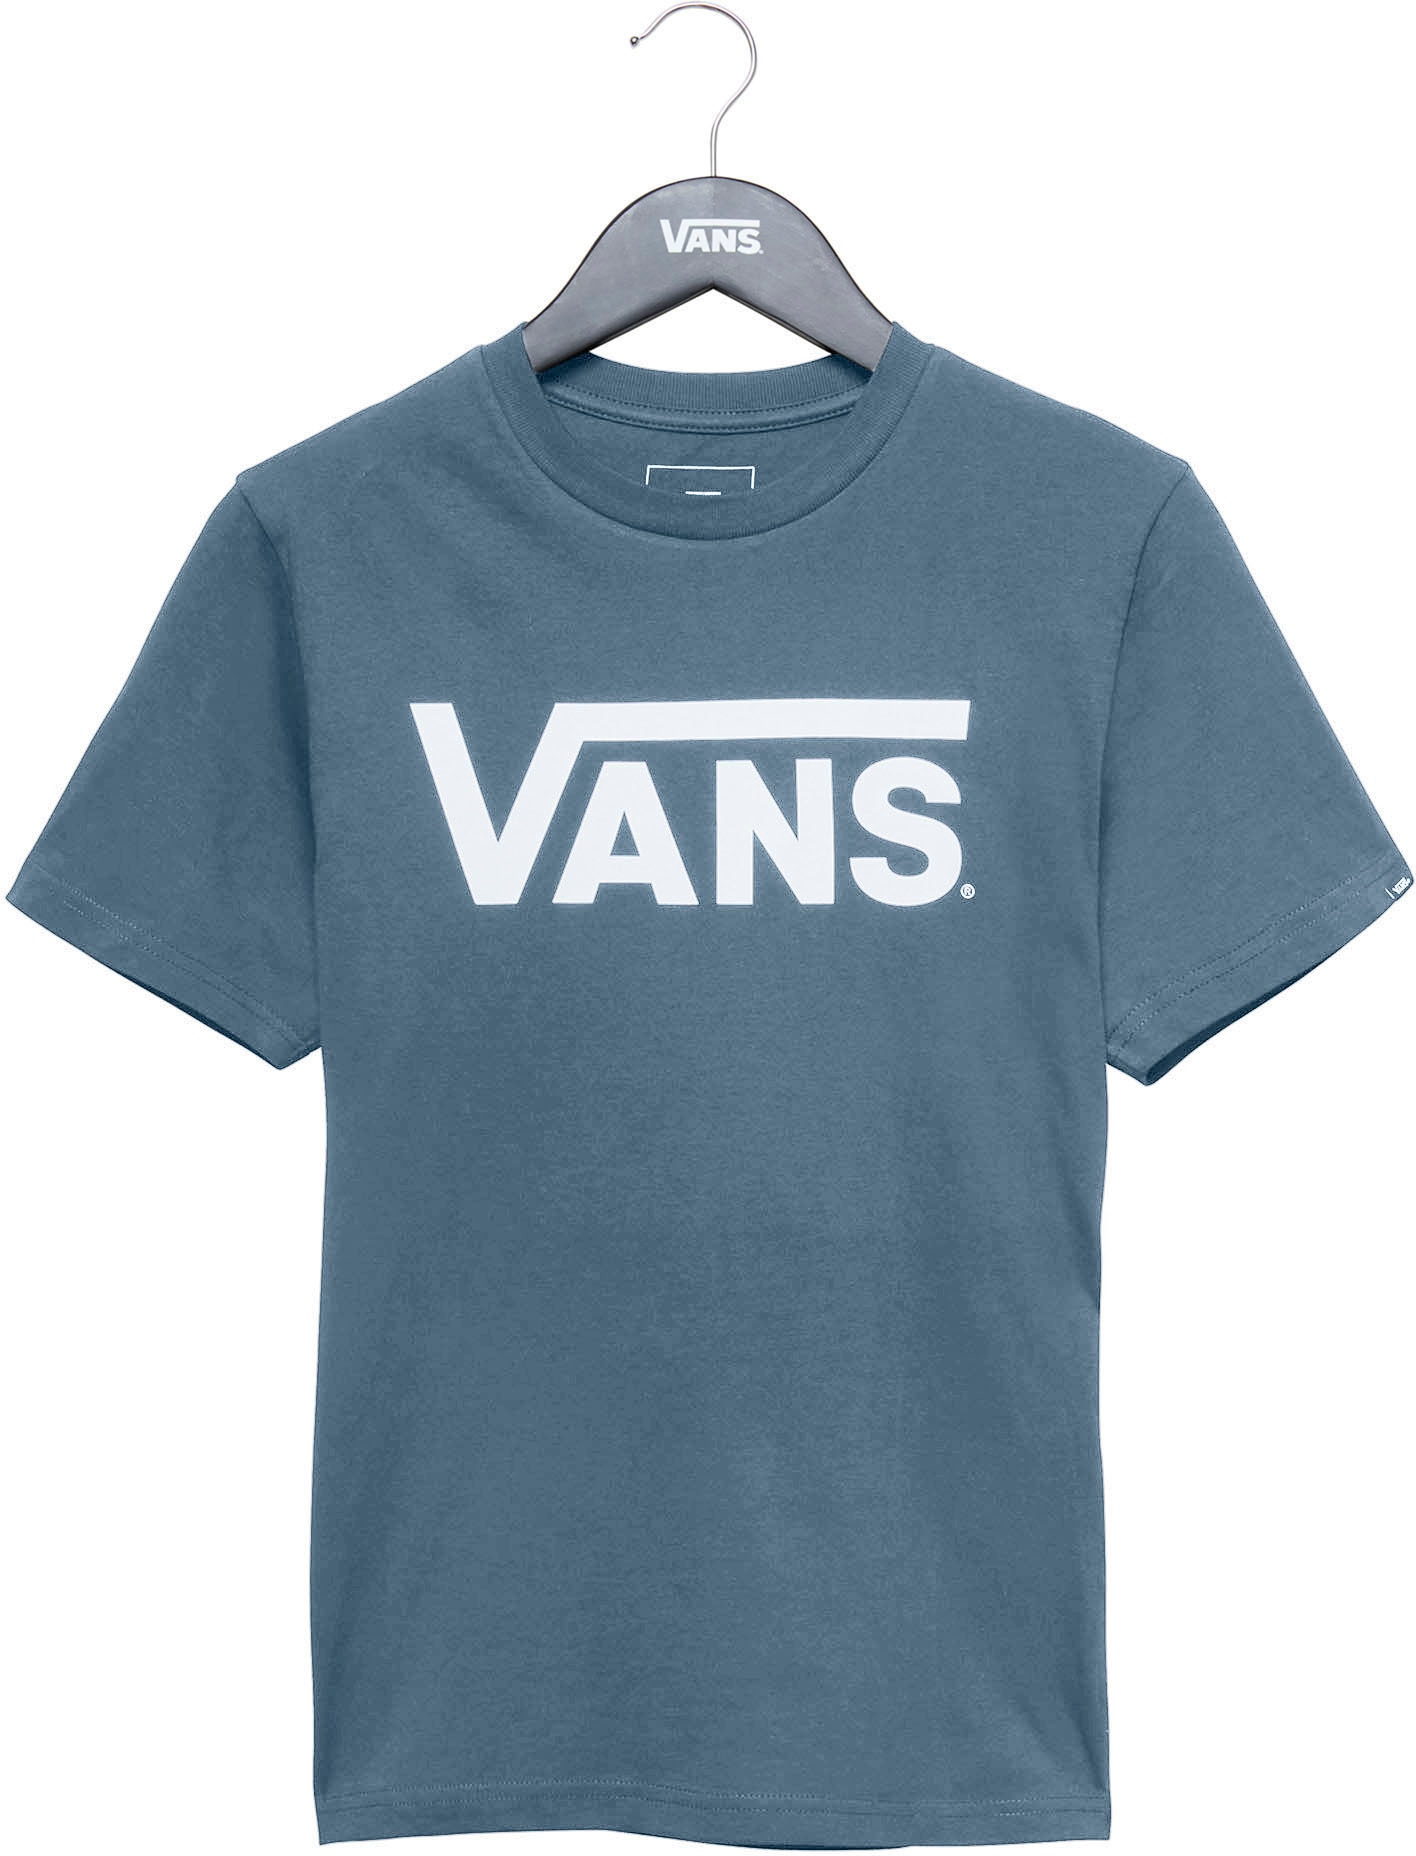 »VANS ♕ auf CLASSIC versandkostenfrei T-Shirt BOYS« Vans